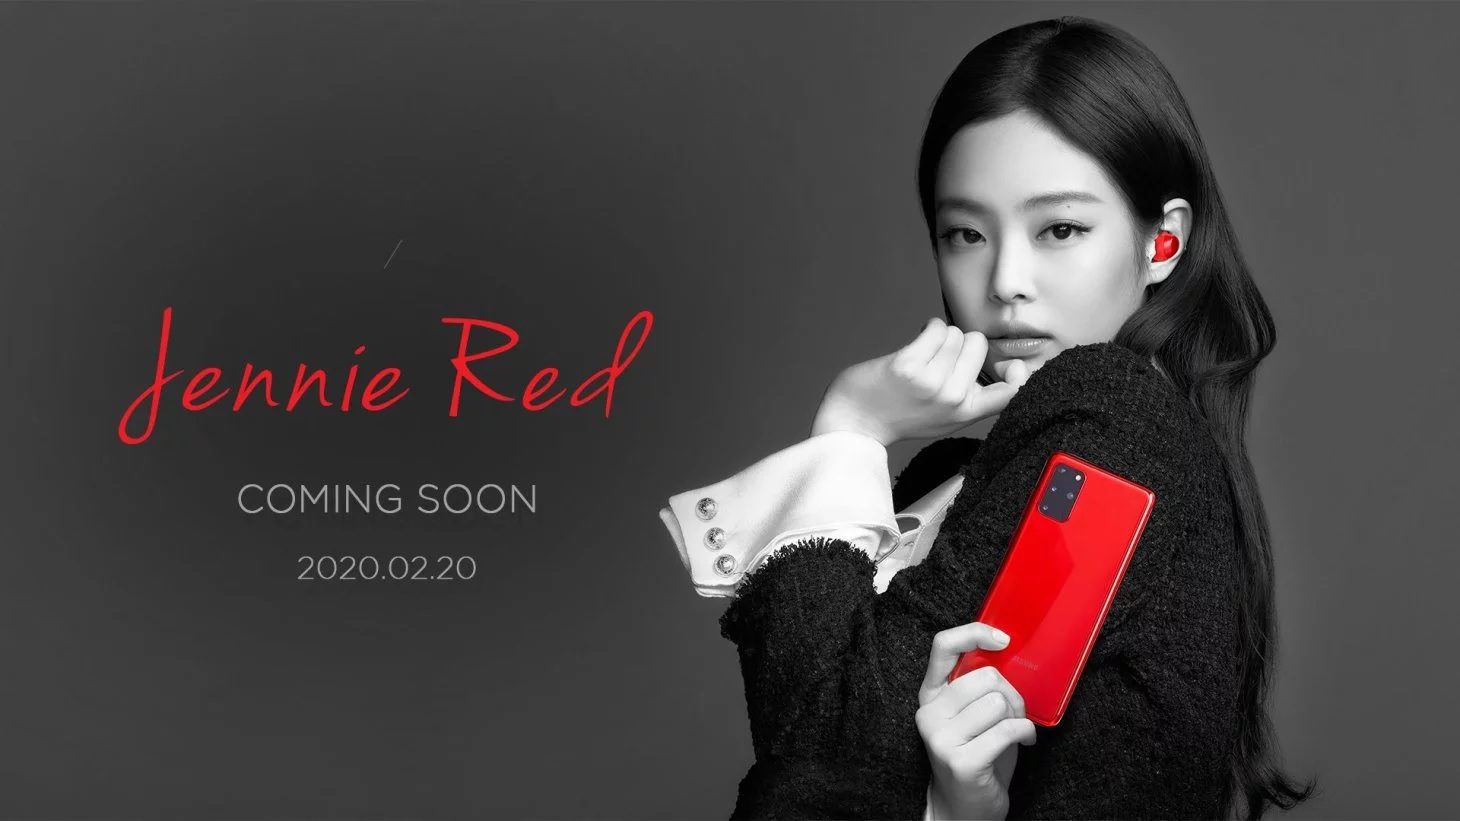 三星正在出售Blackpink品牌的詹妮·红色三星Galaxy S20 +手机和Galaxy Buds +套装